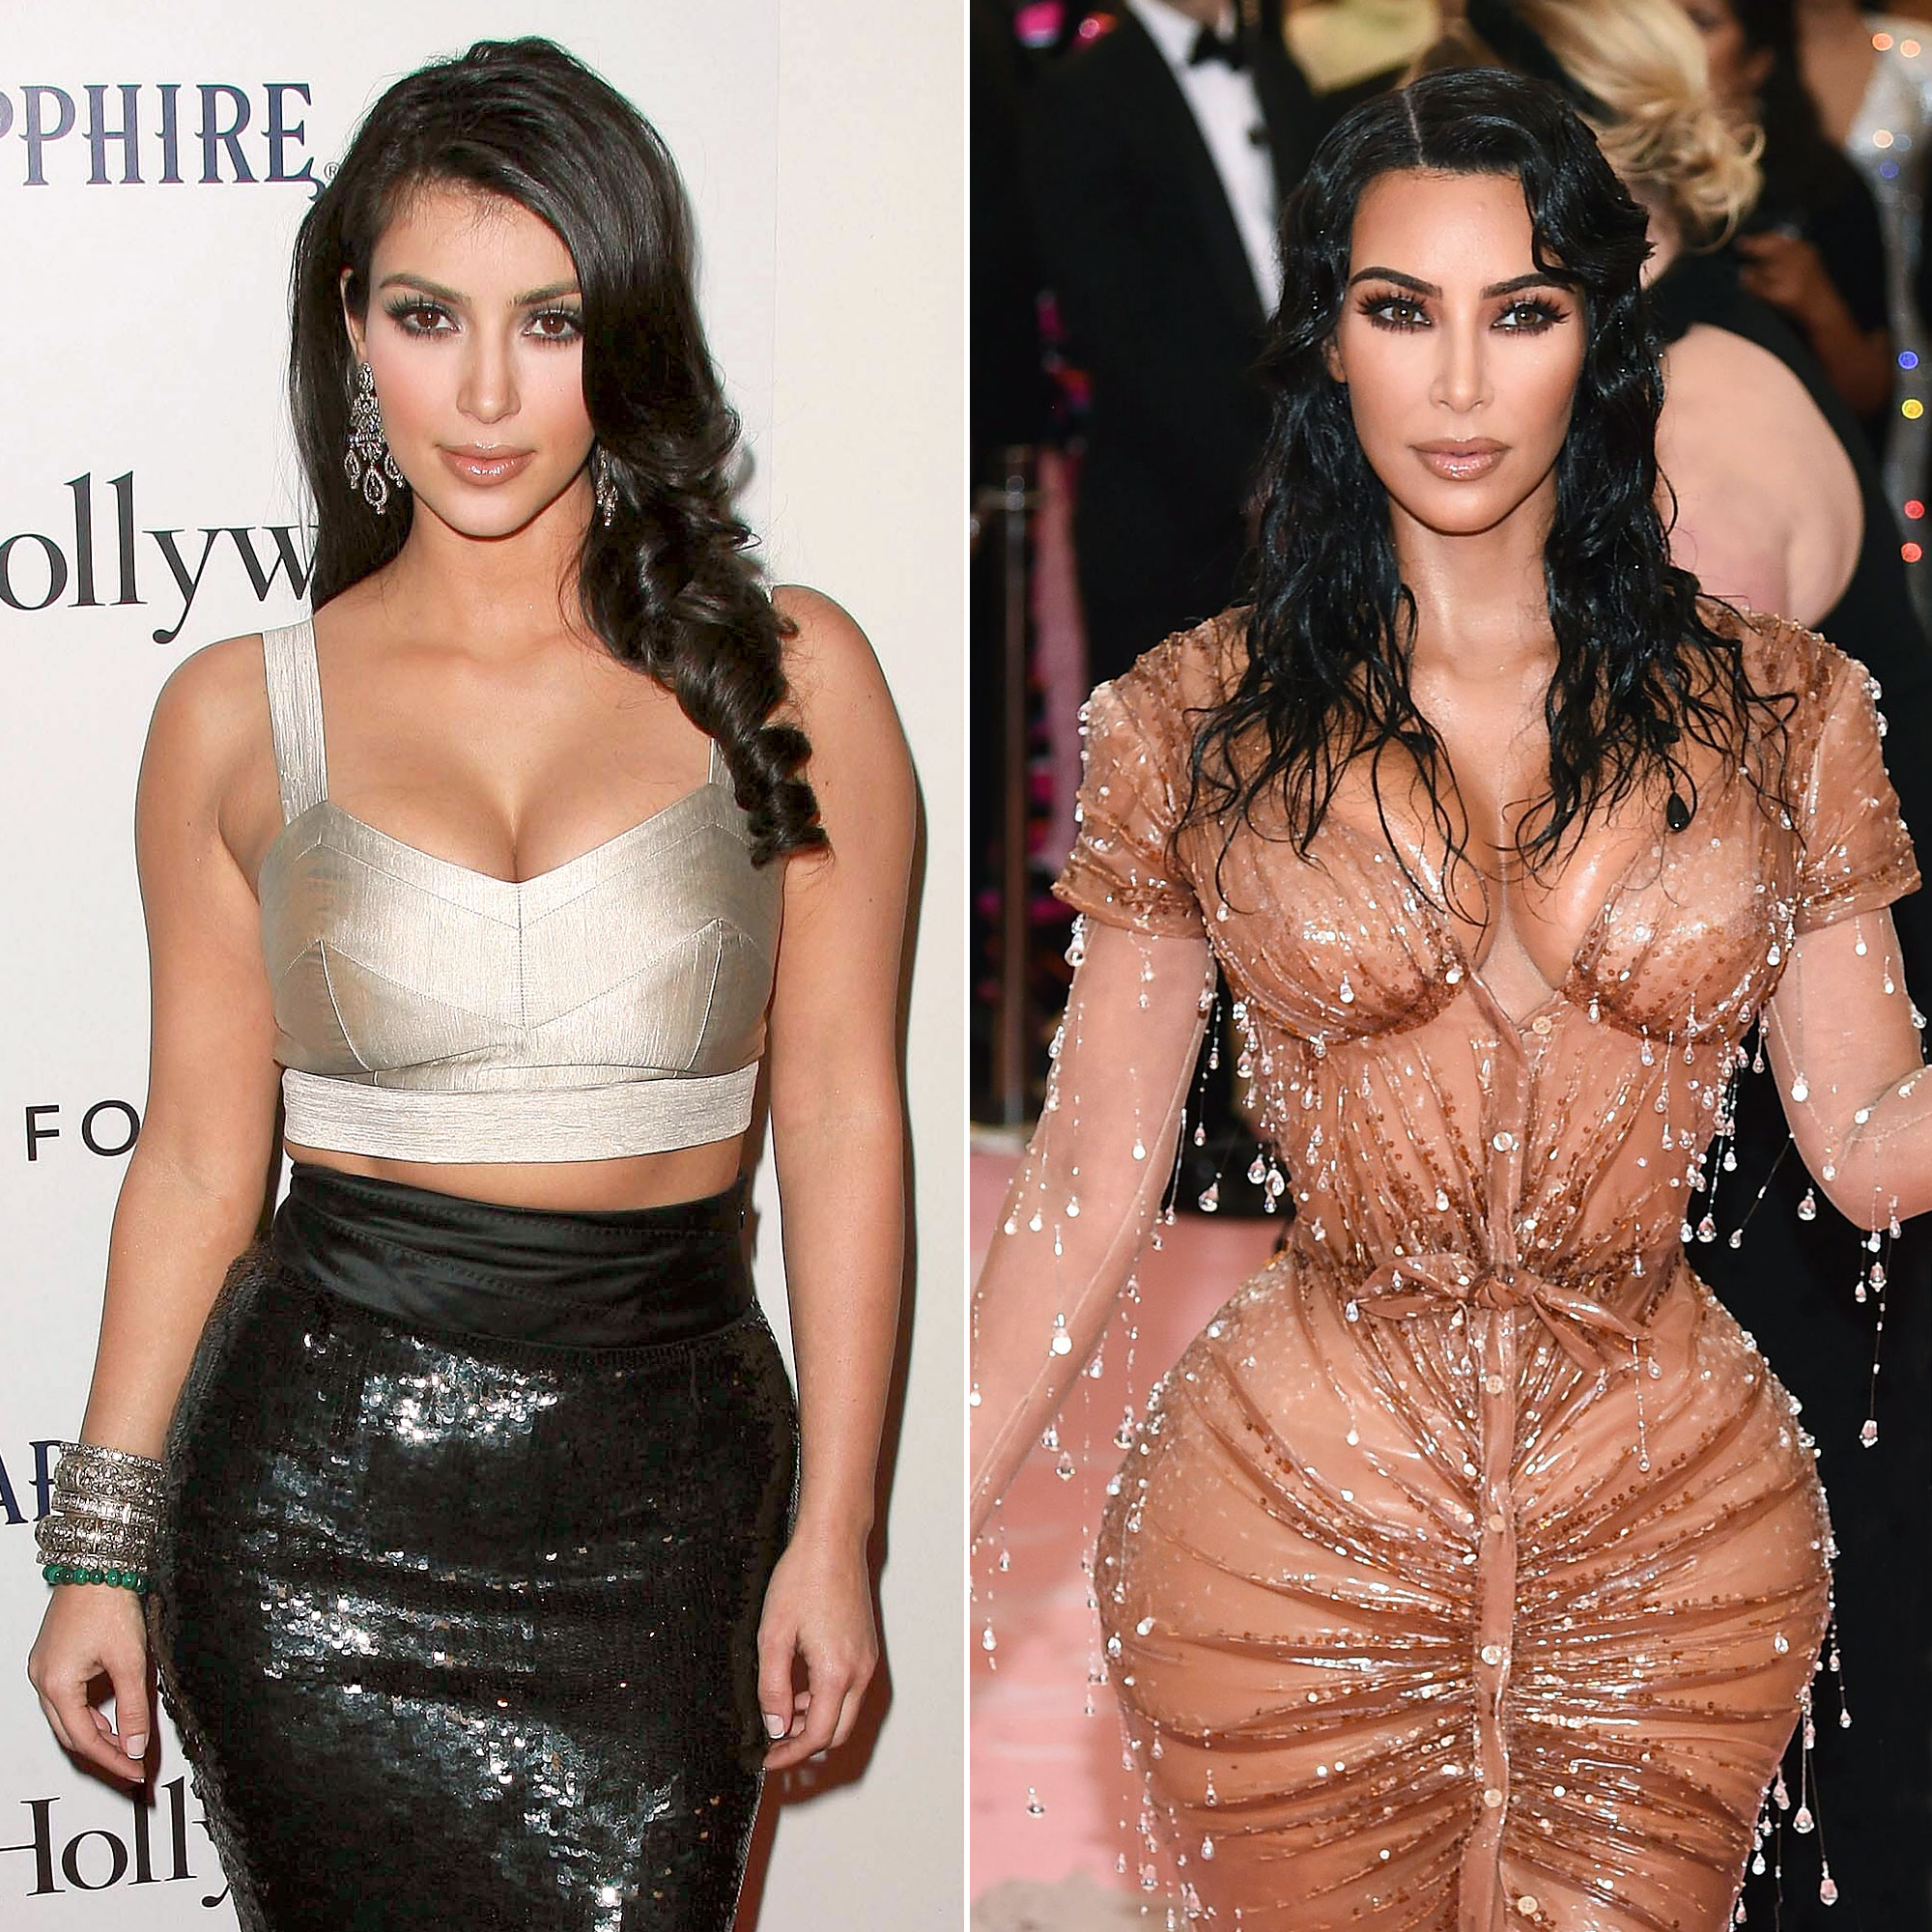 Kim Kardashian's Body Evolution Through the Years